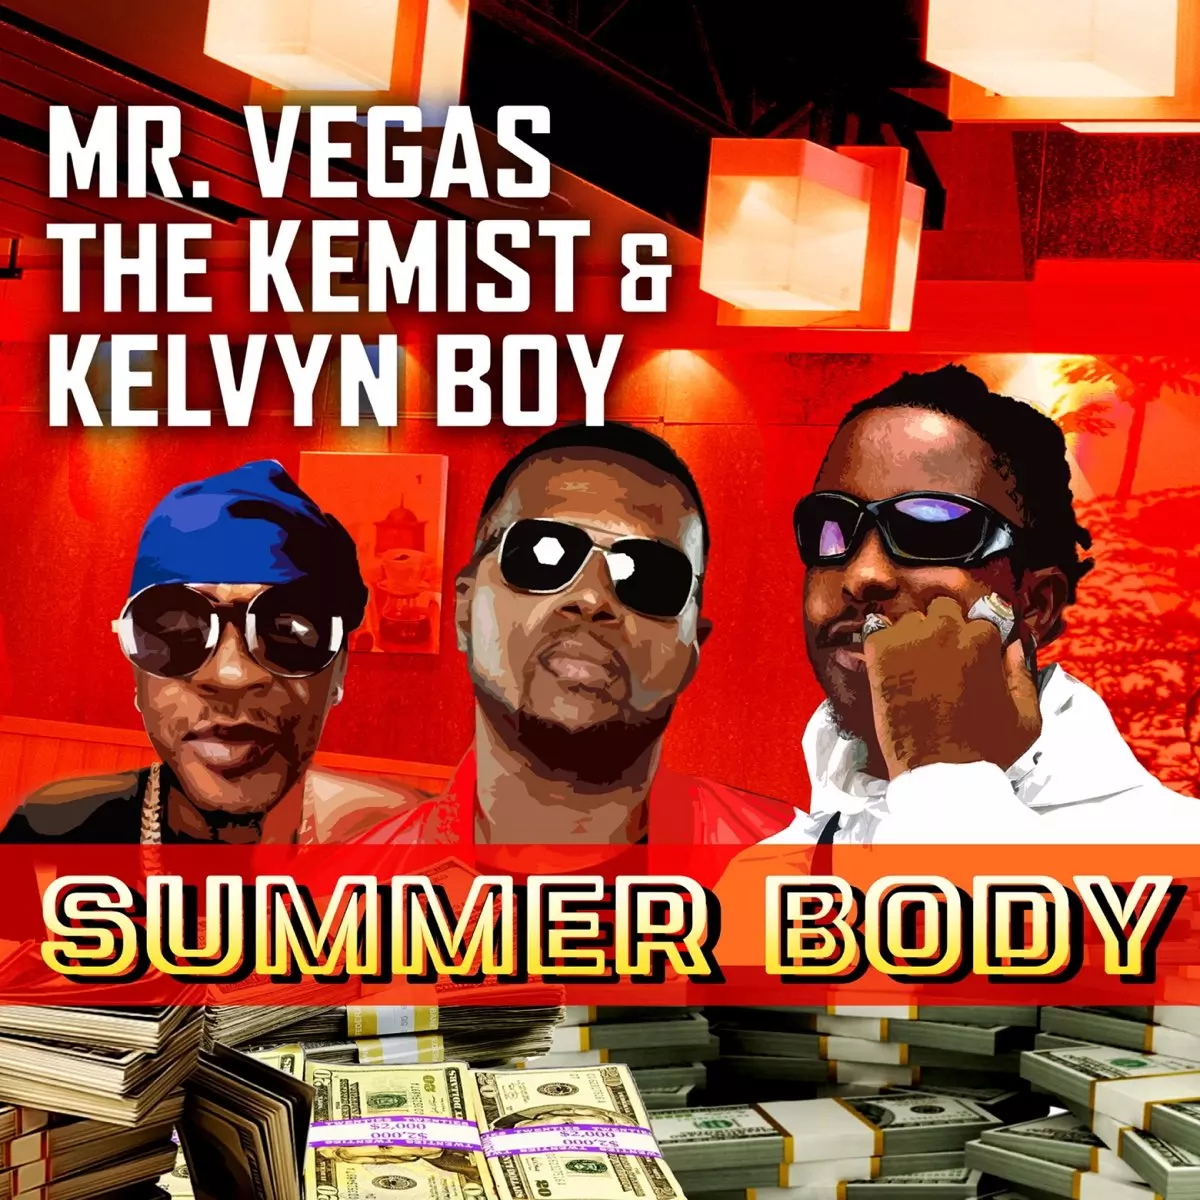 Summer Body - Single by Mr. Vegas, The Kemist & Kelvyn Boy on Apple Music